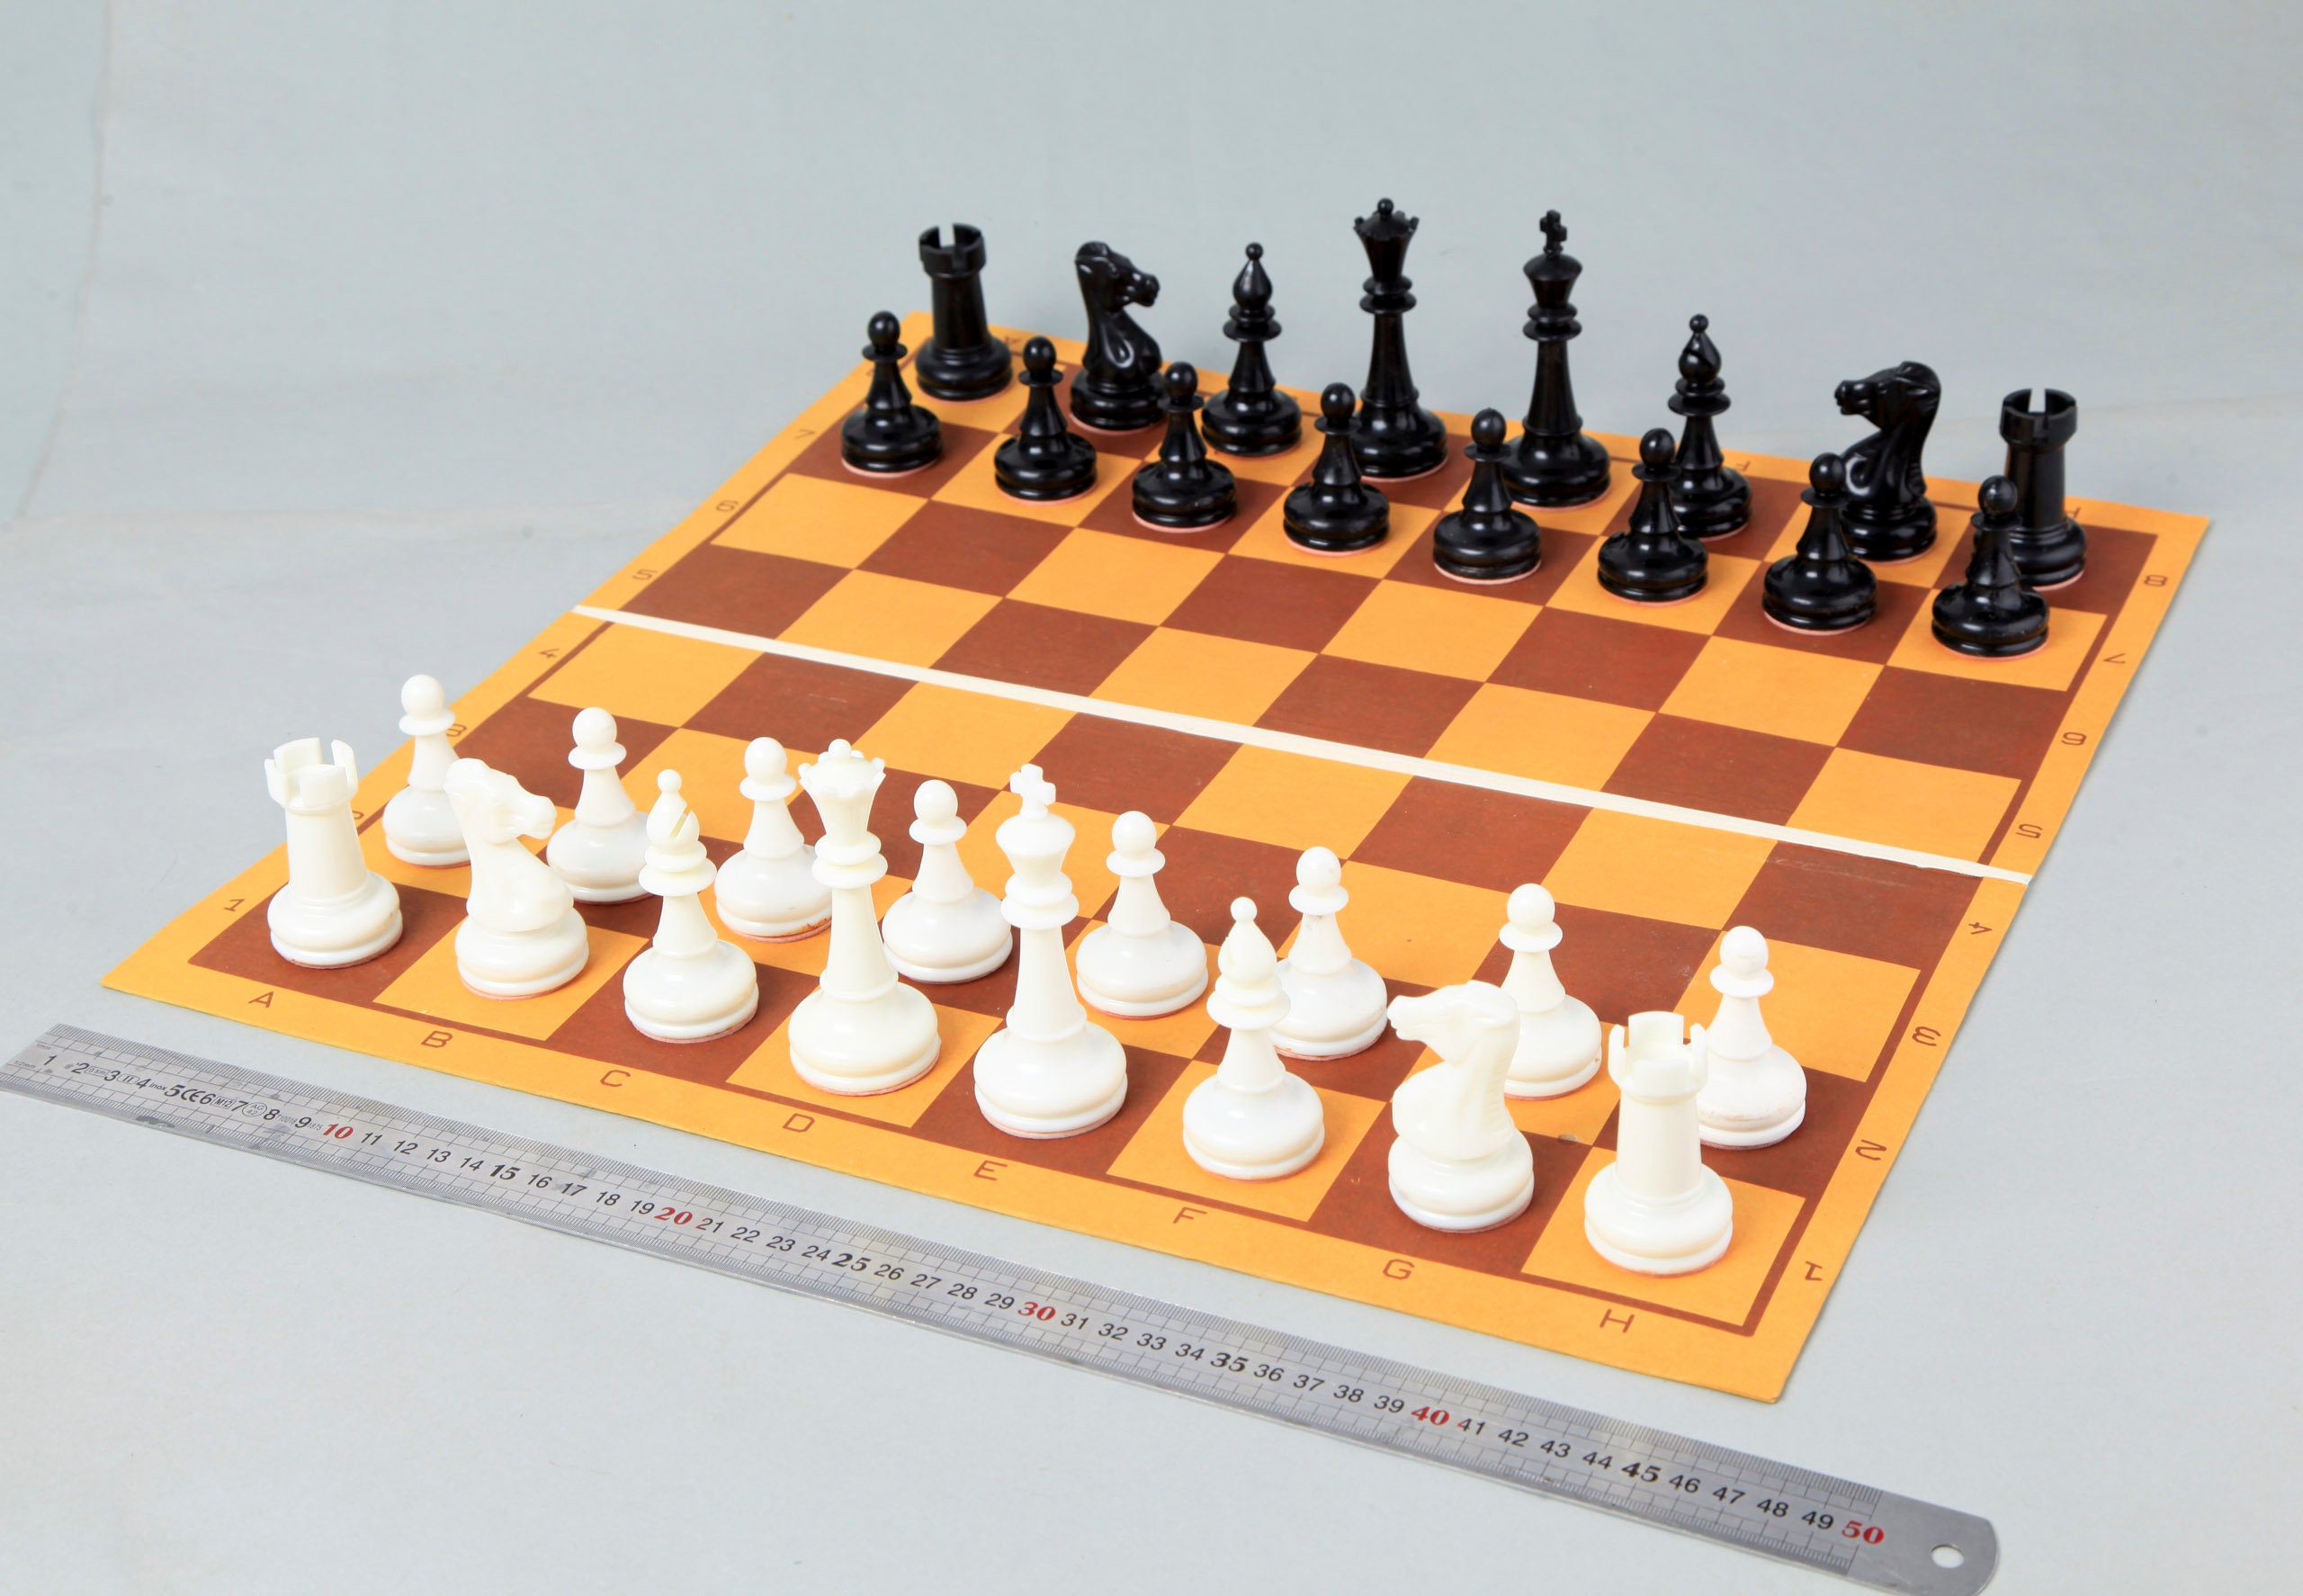 Turnier Schach mit Figuren 8, Nr. 98 aus Holz, Schachspiel 55x55x3